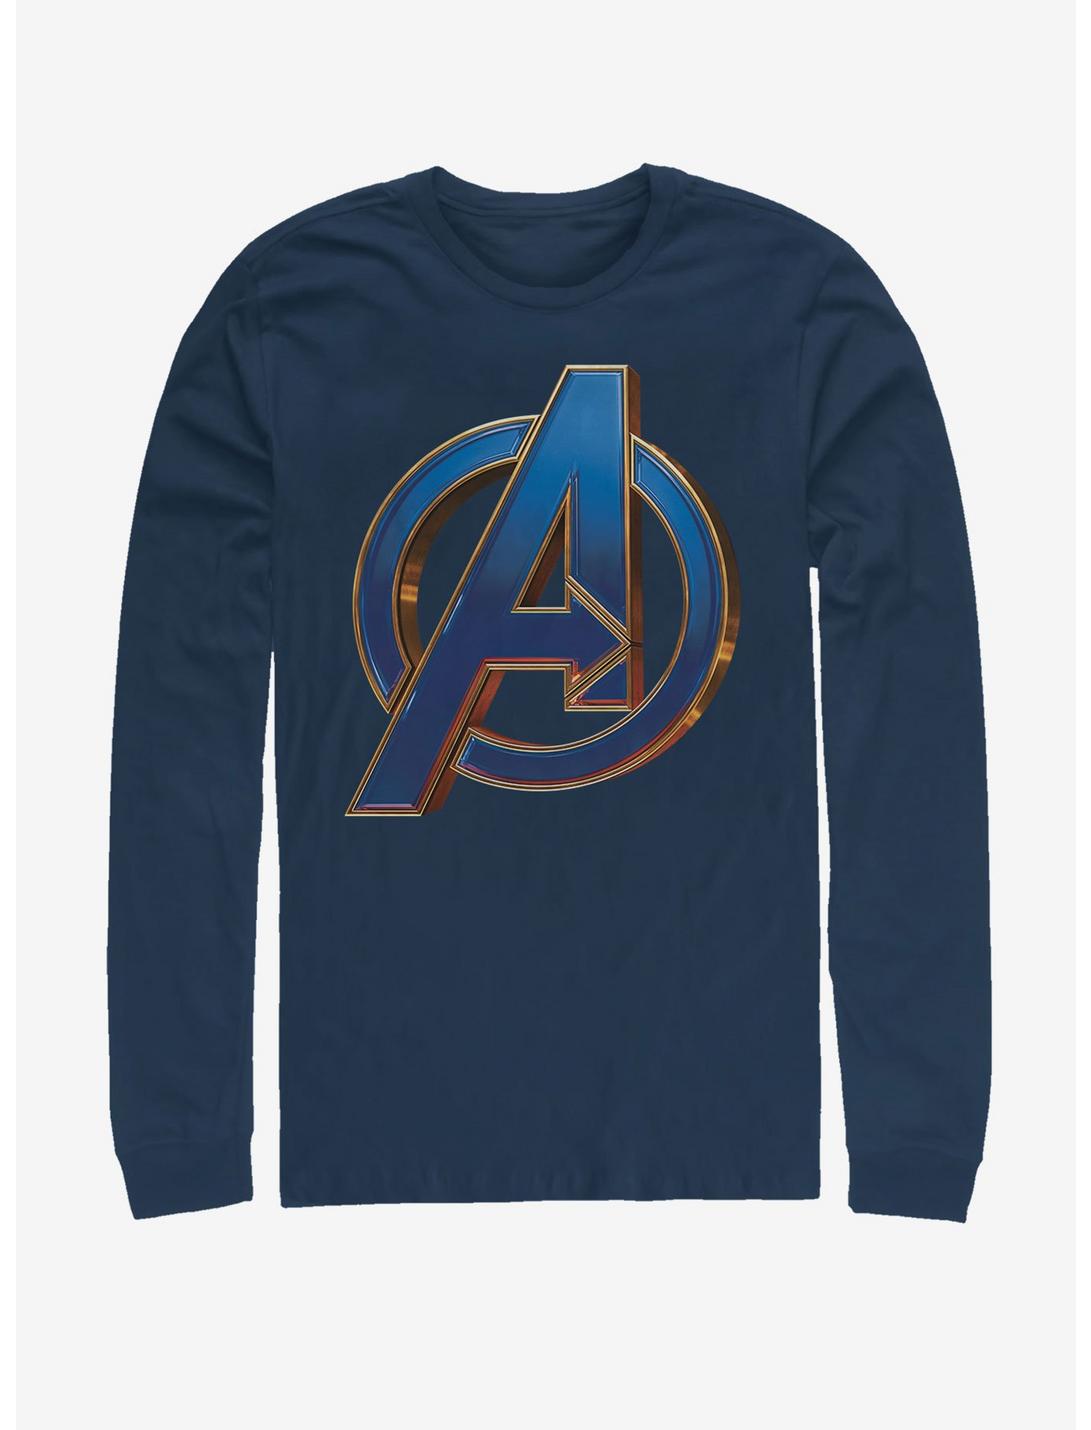 Marvel Avengers Endgame Blue Logo Long-Sleeve T-Shirt, NAVY, hi-res